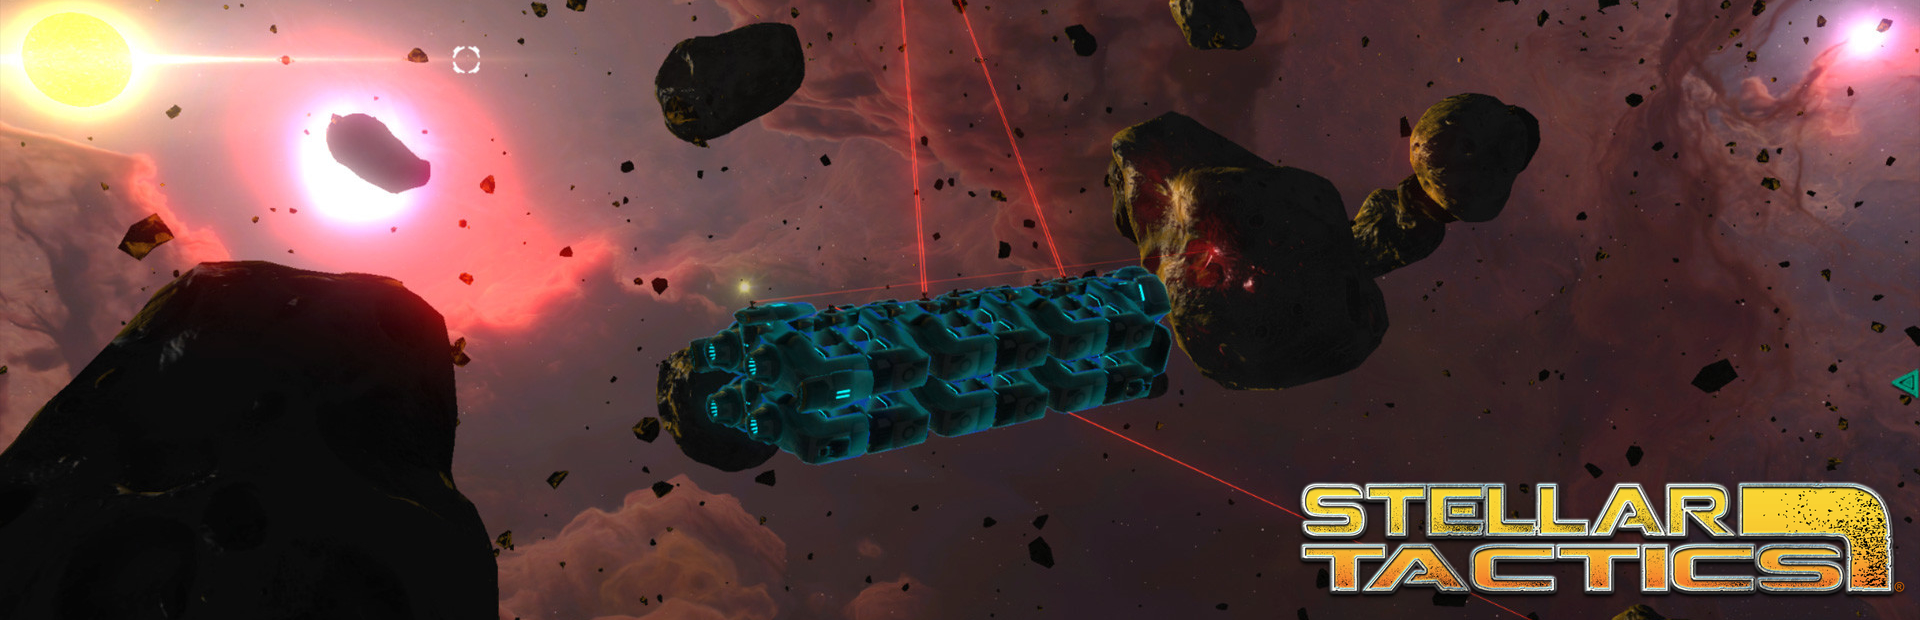 دانلود بازی Stellar Tactics برای پی سی | گیمباتو